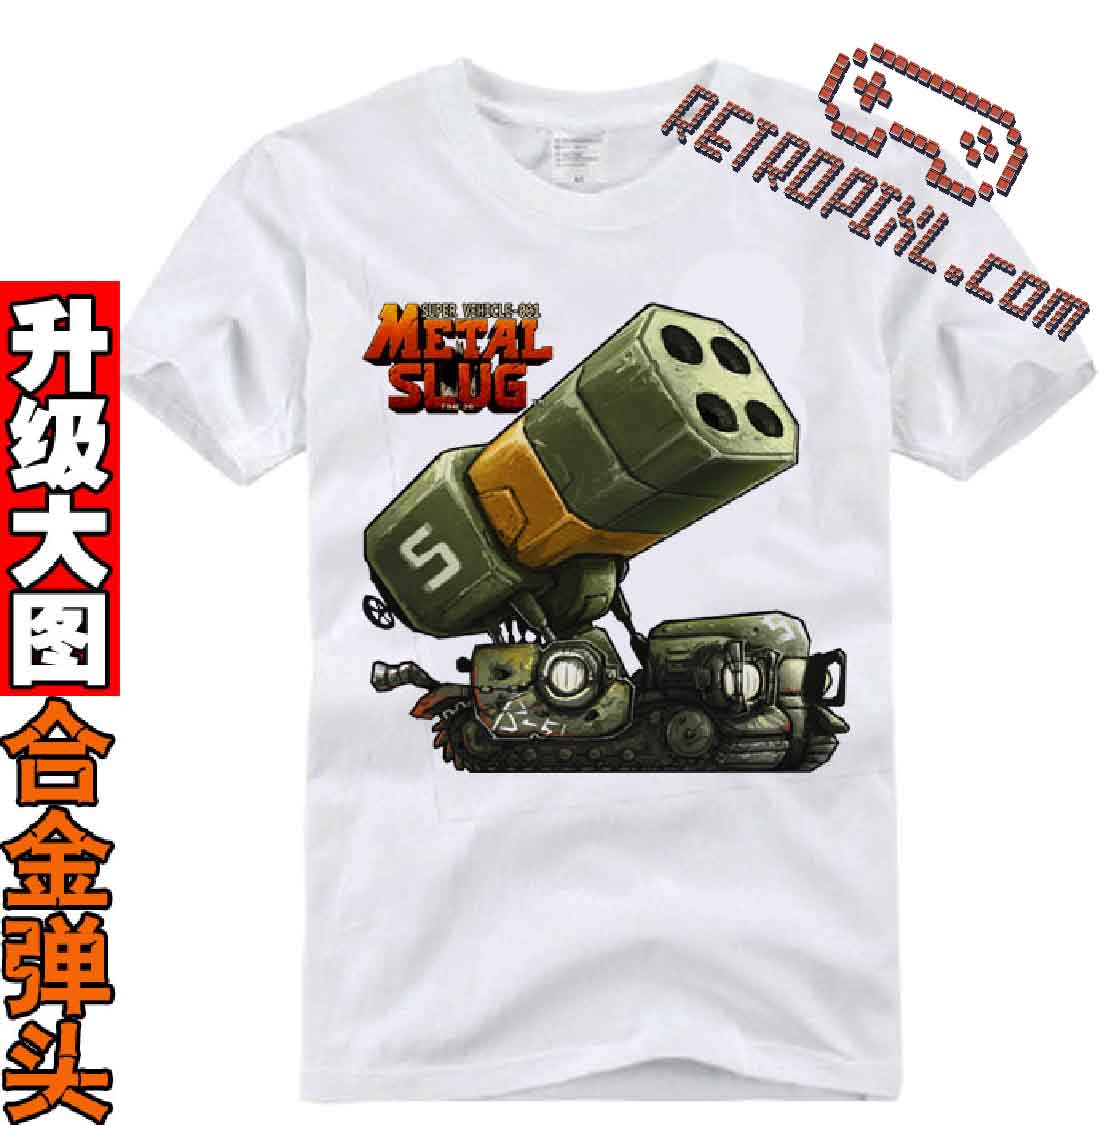 RetroPixl Retro Goodies retrogaming Metal Slug T-shirt Tshirt